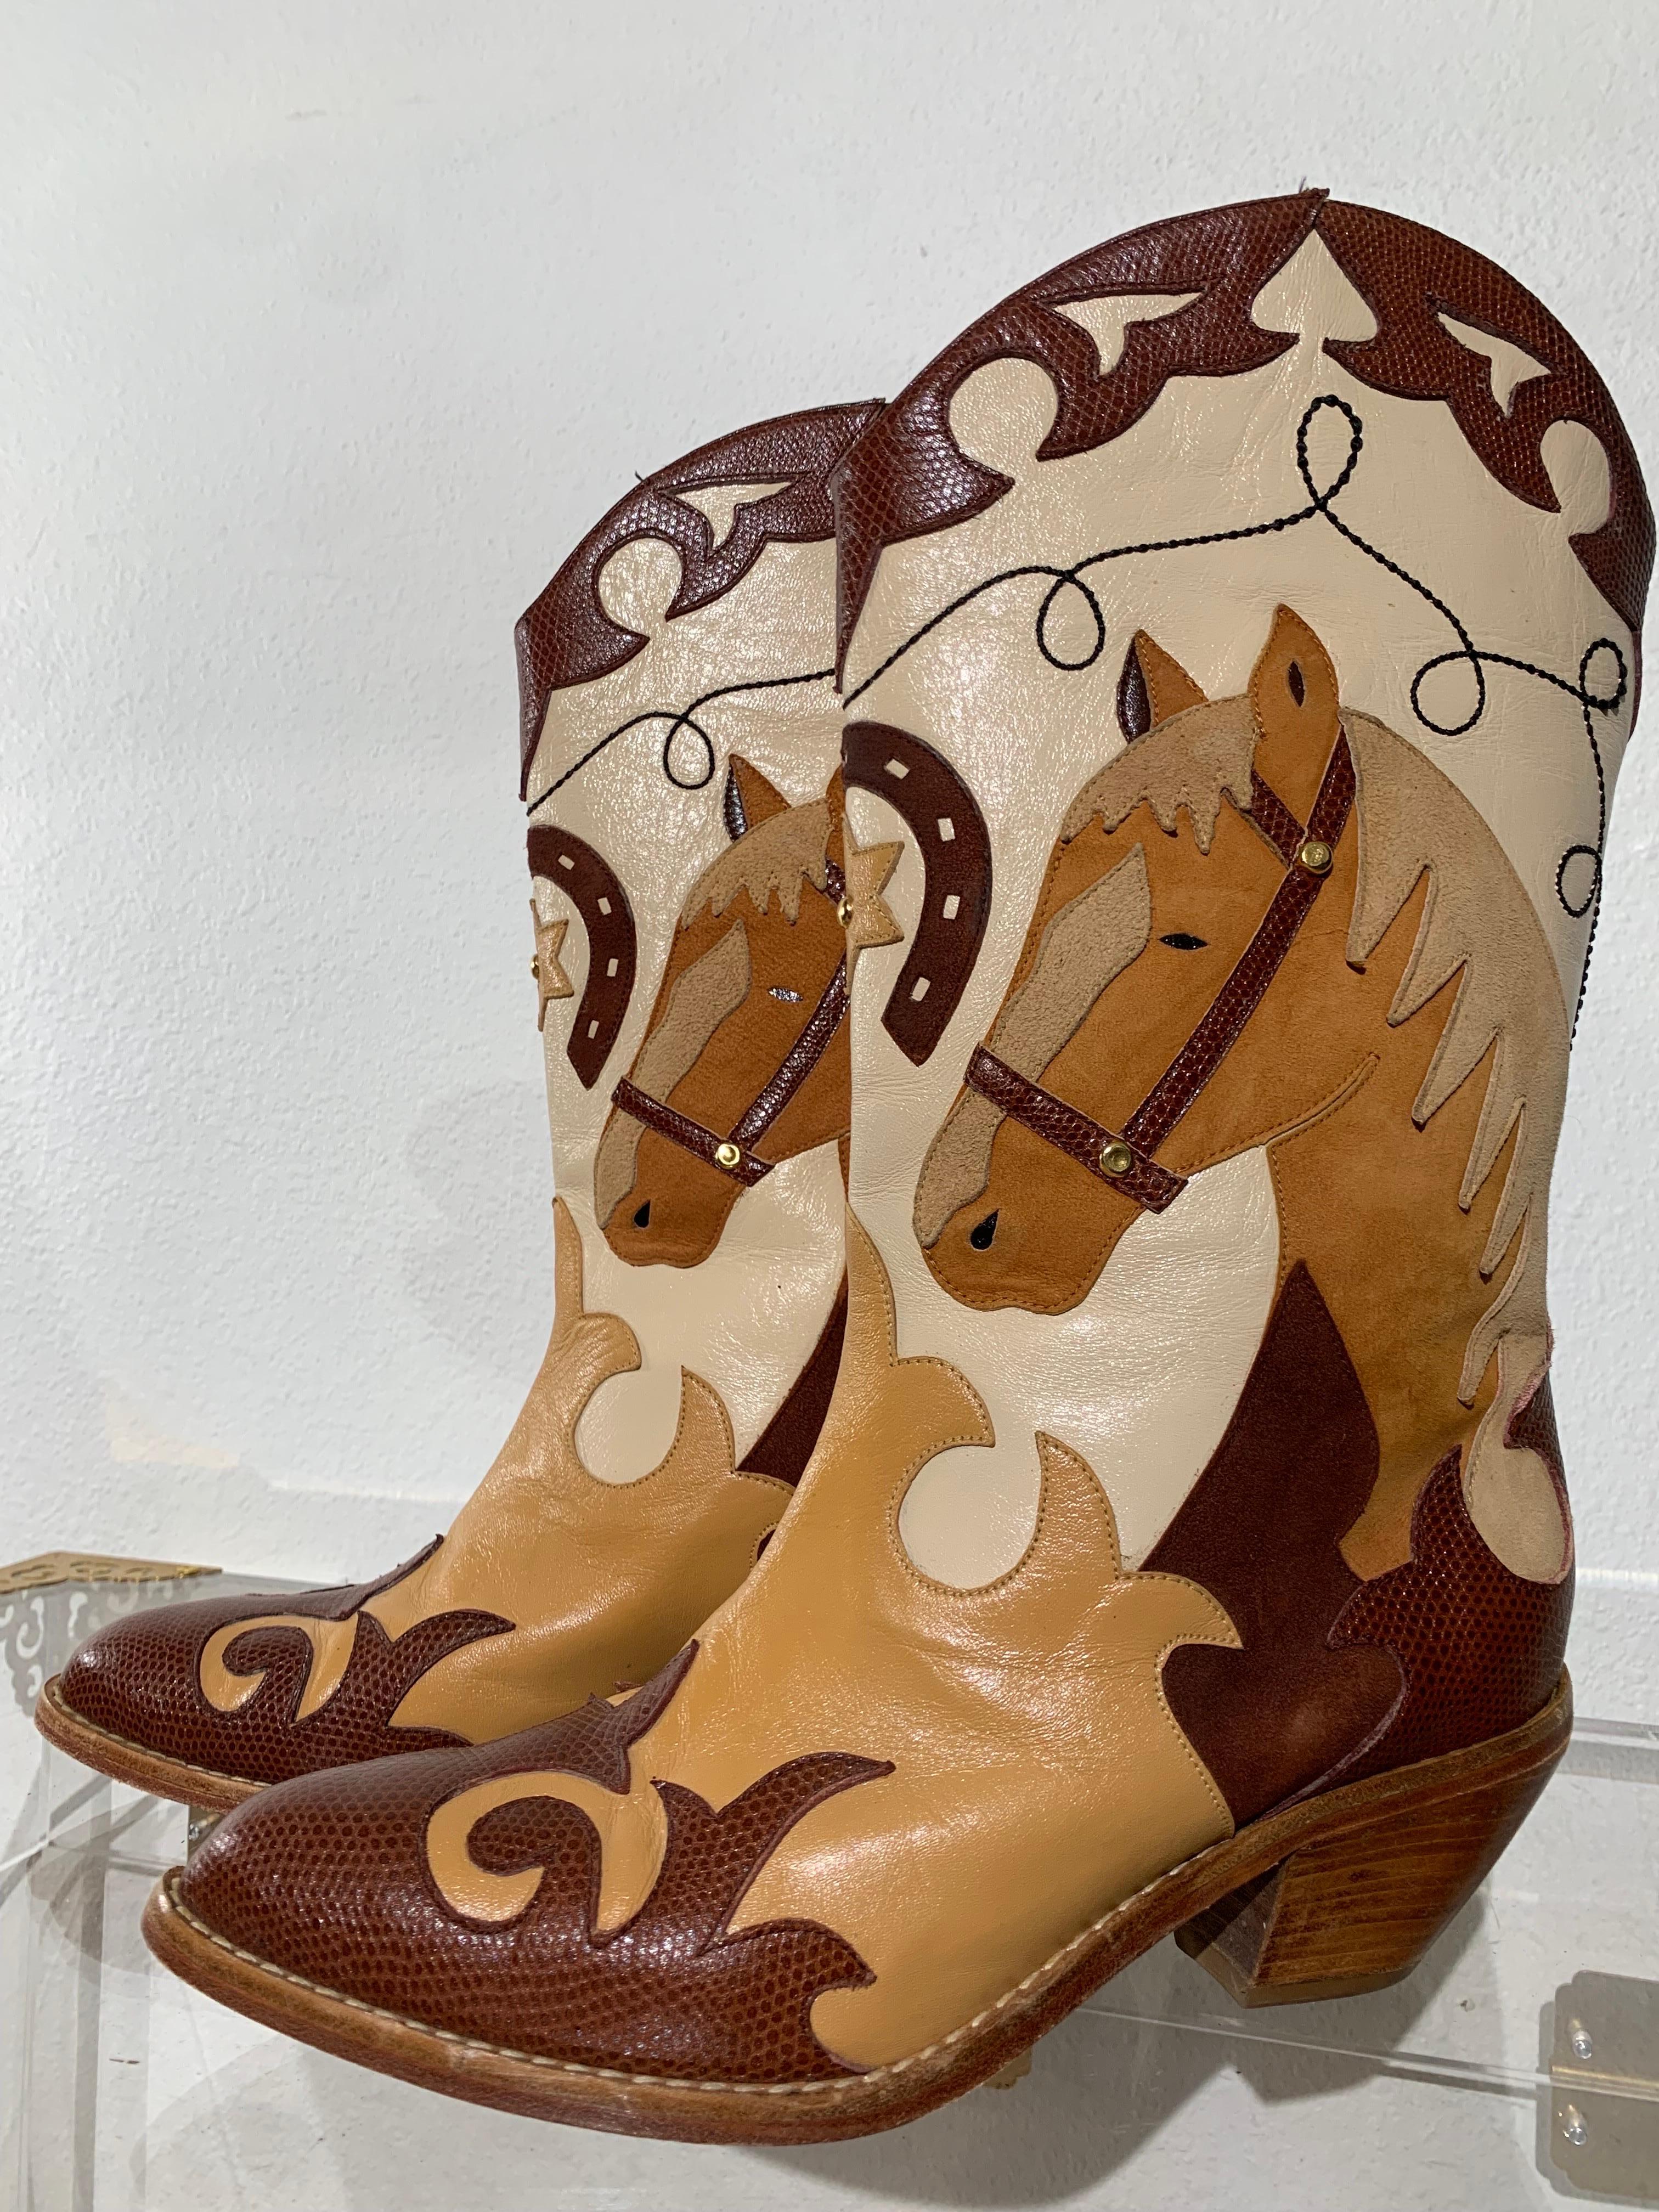 1980er Jahre Western Cowboy Pferd Motiv kurze Stiefel w Leder Applique Design:  Zalo Label Cowboystiefel mit einem fabelhaft detaillierten Pferdemotiv an der Seite. Spitz zulaufend, 
Stiefel mit kubanischem Absatz und mittlerer Wadenlänge in Braun-